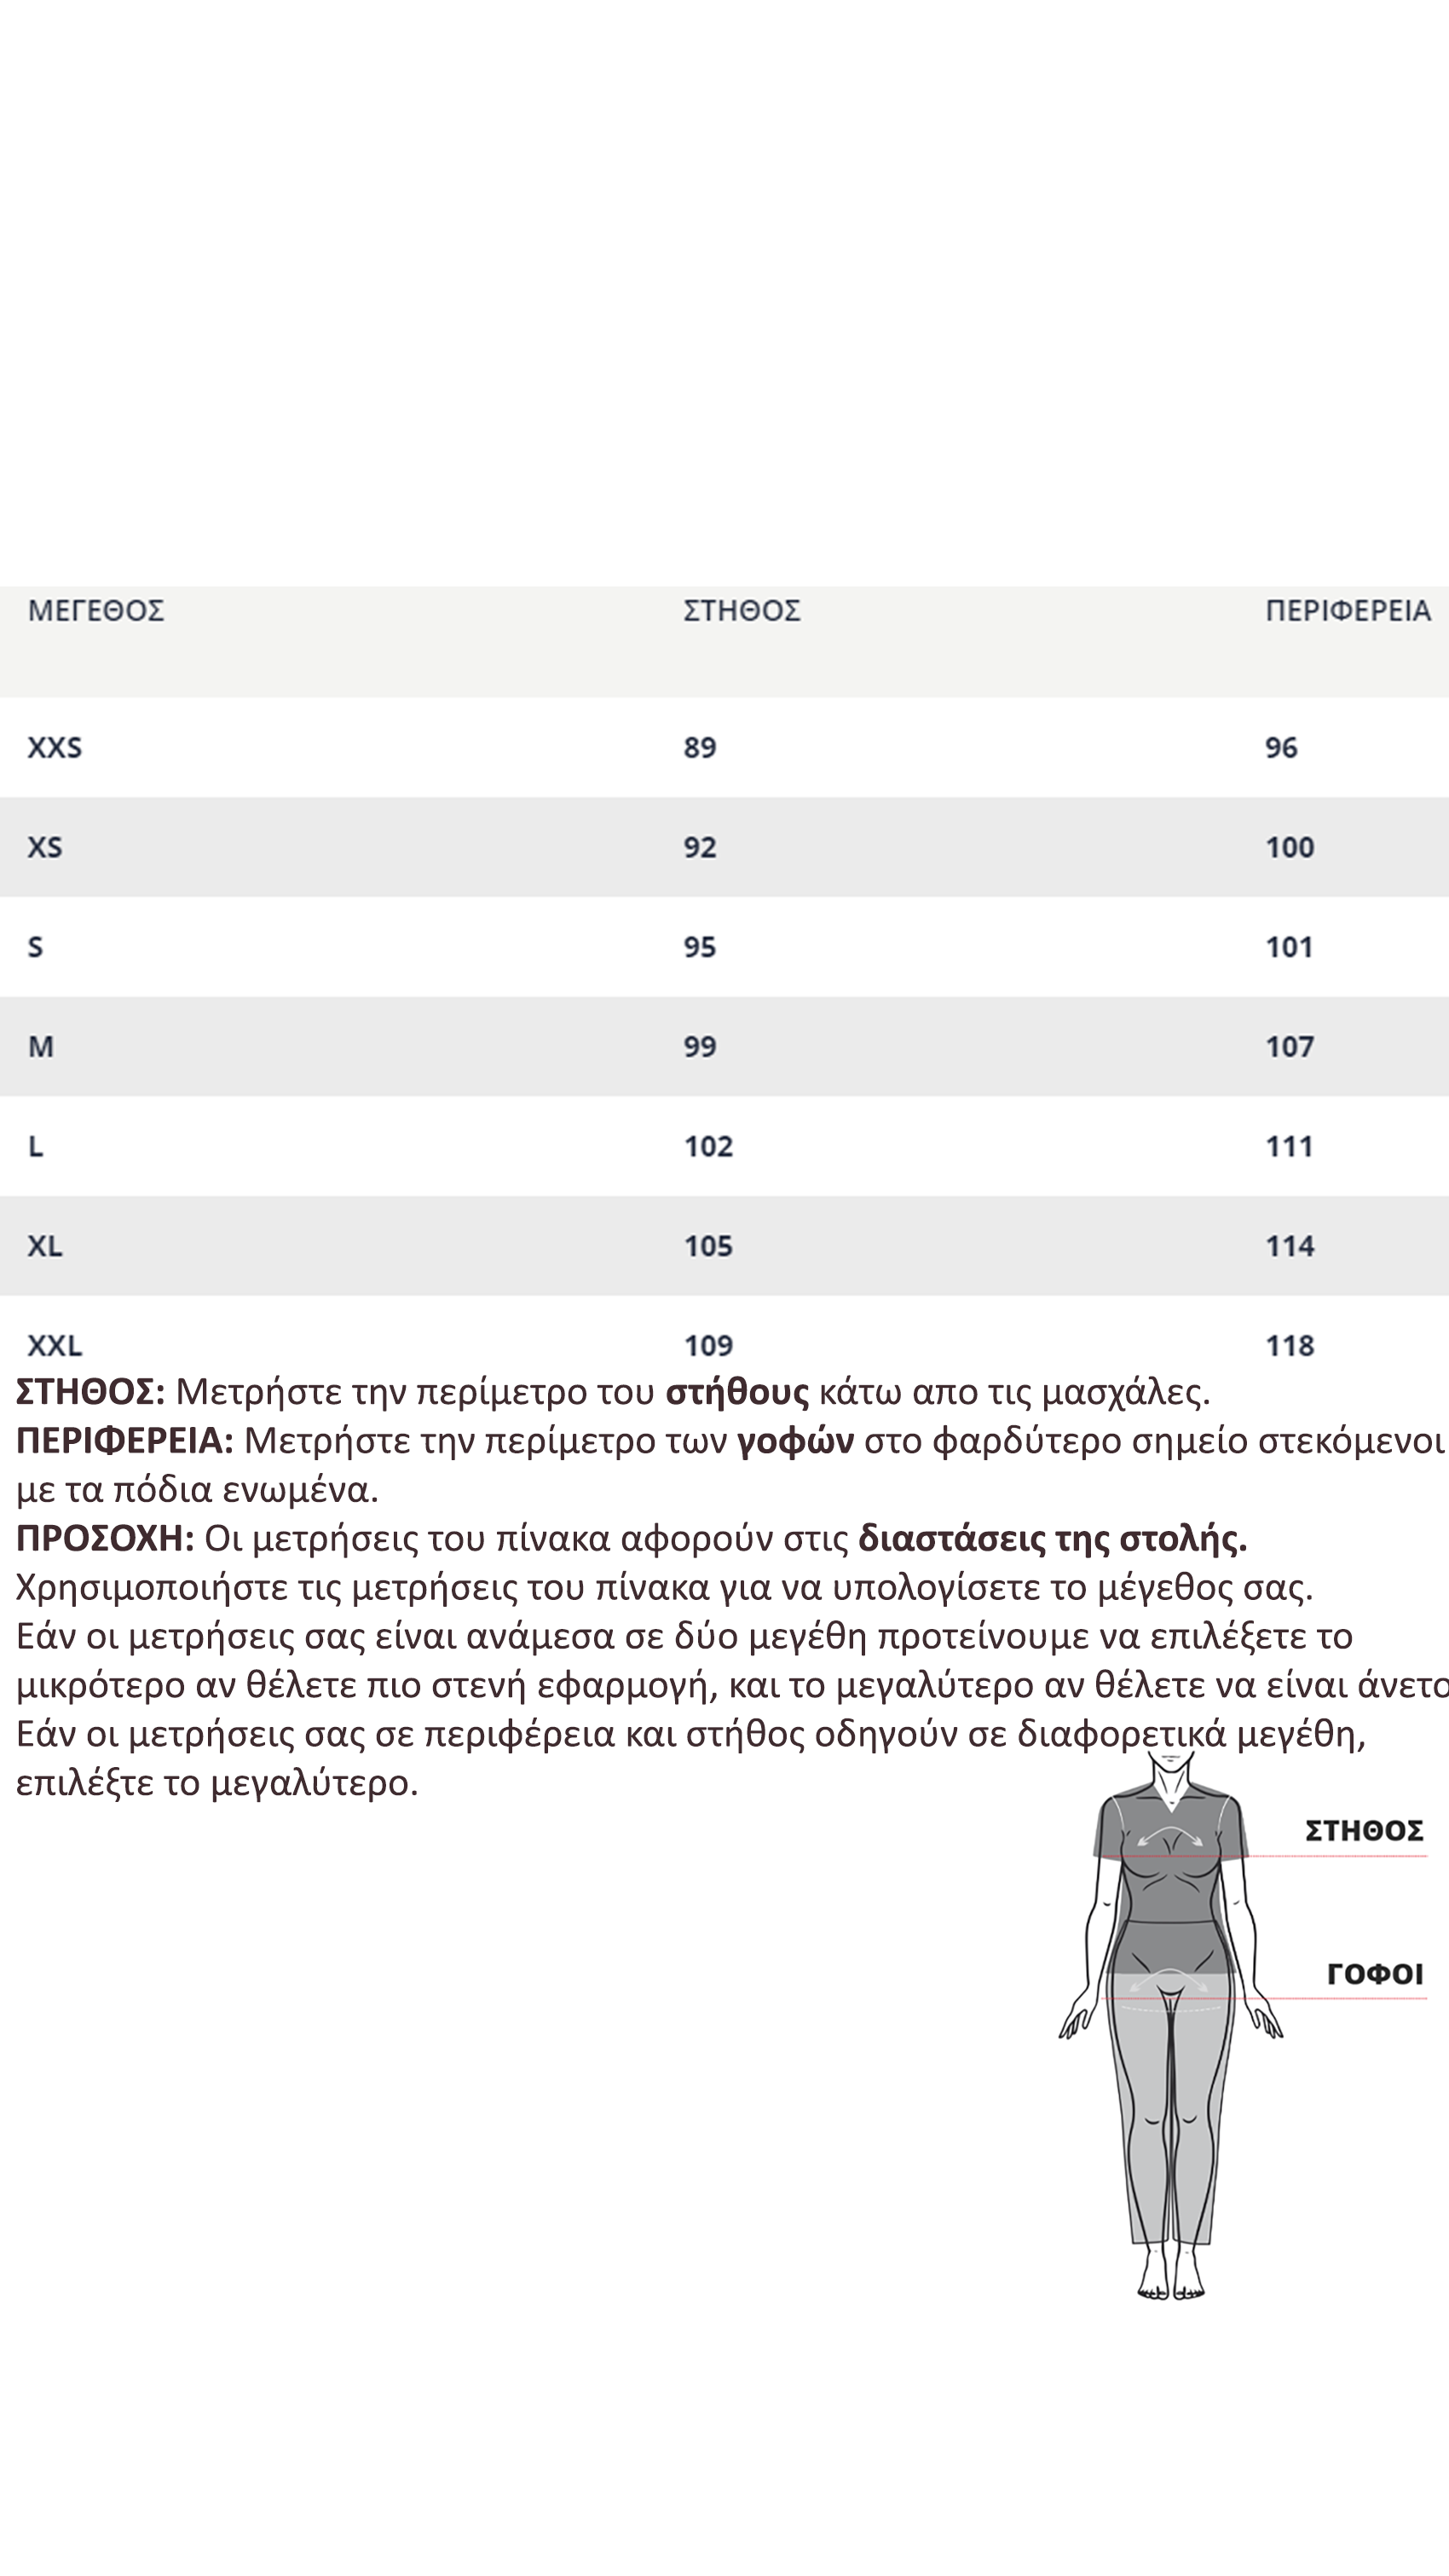 Ιατρική Στολή Γυναικεία Μπλούζα - Παντελόνι (Σετ) Stretch Μωβ 